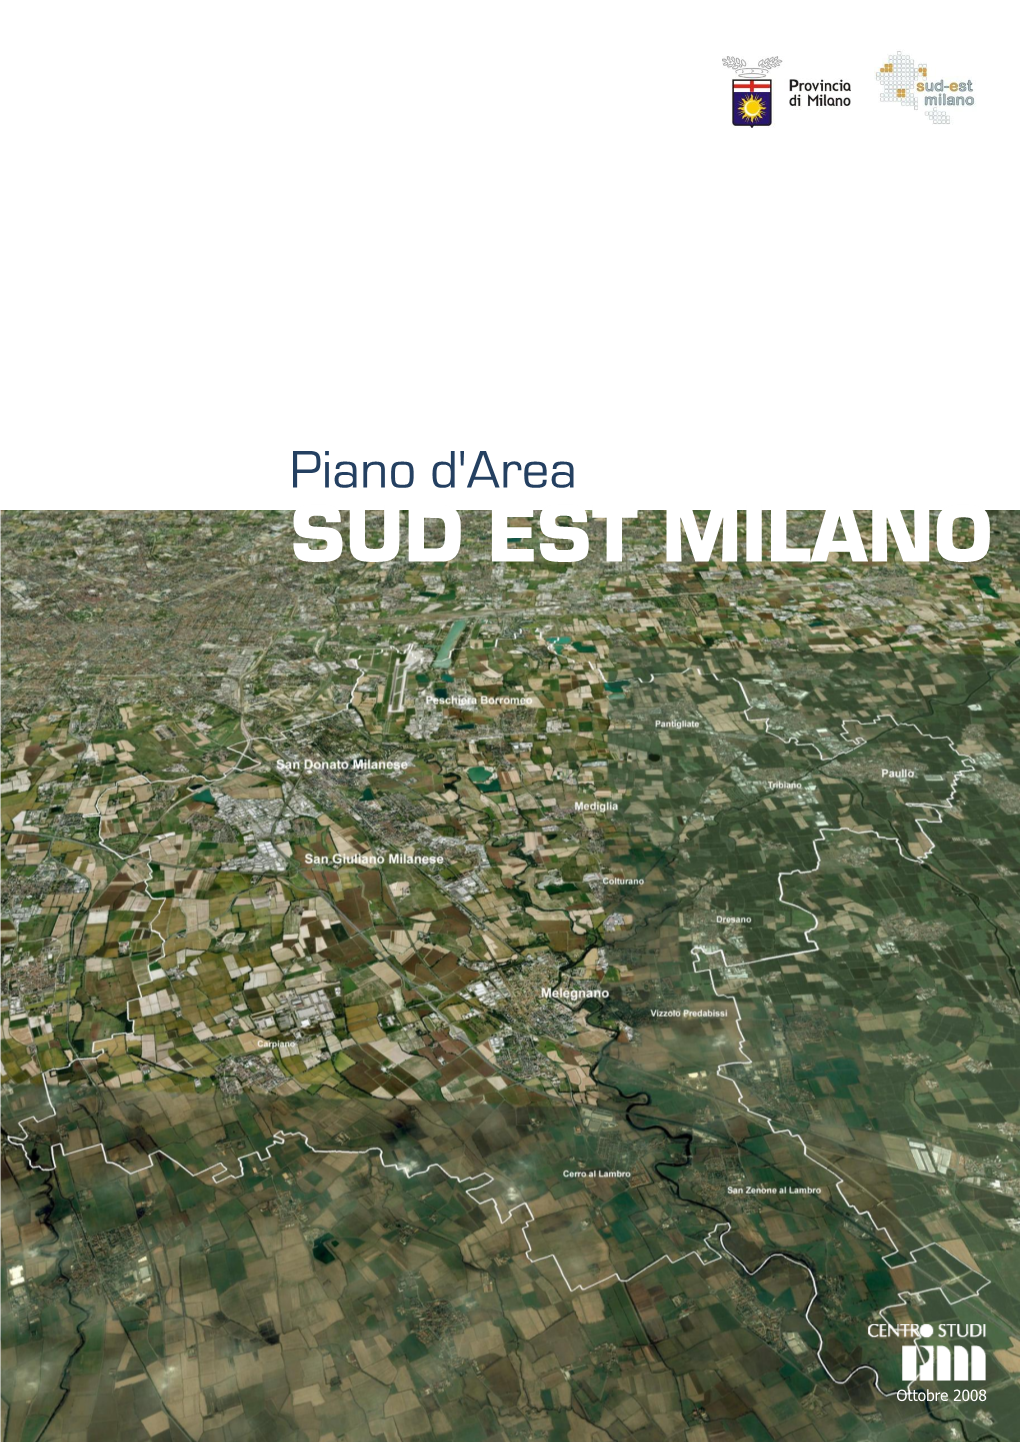 Sud Est Milano